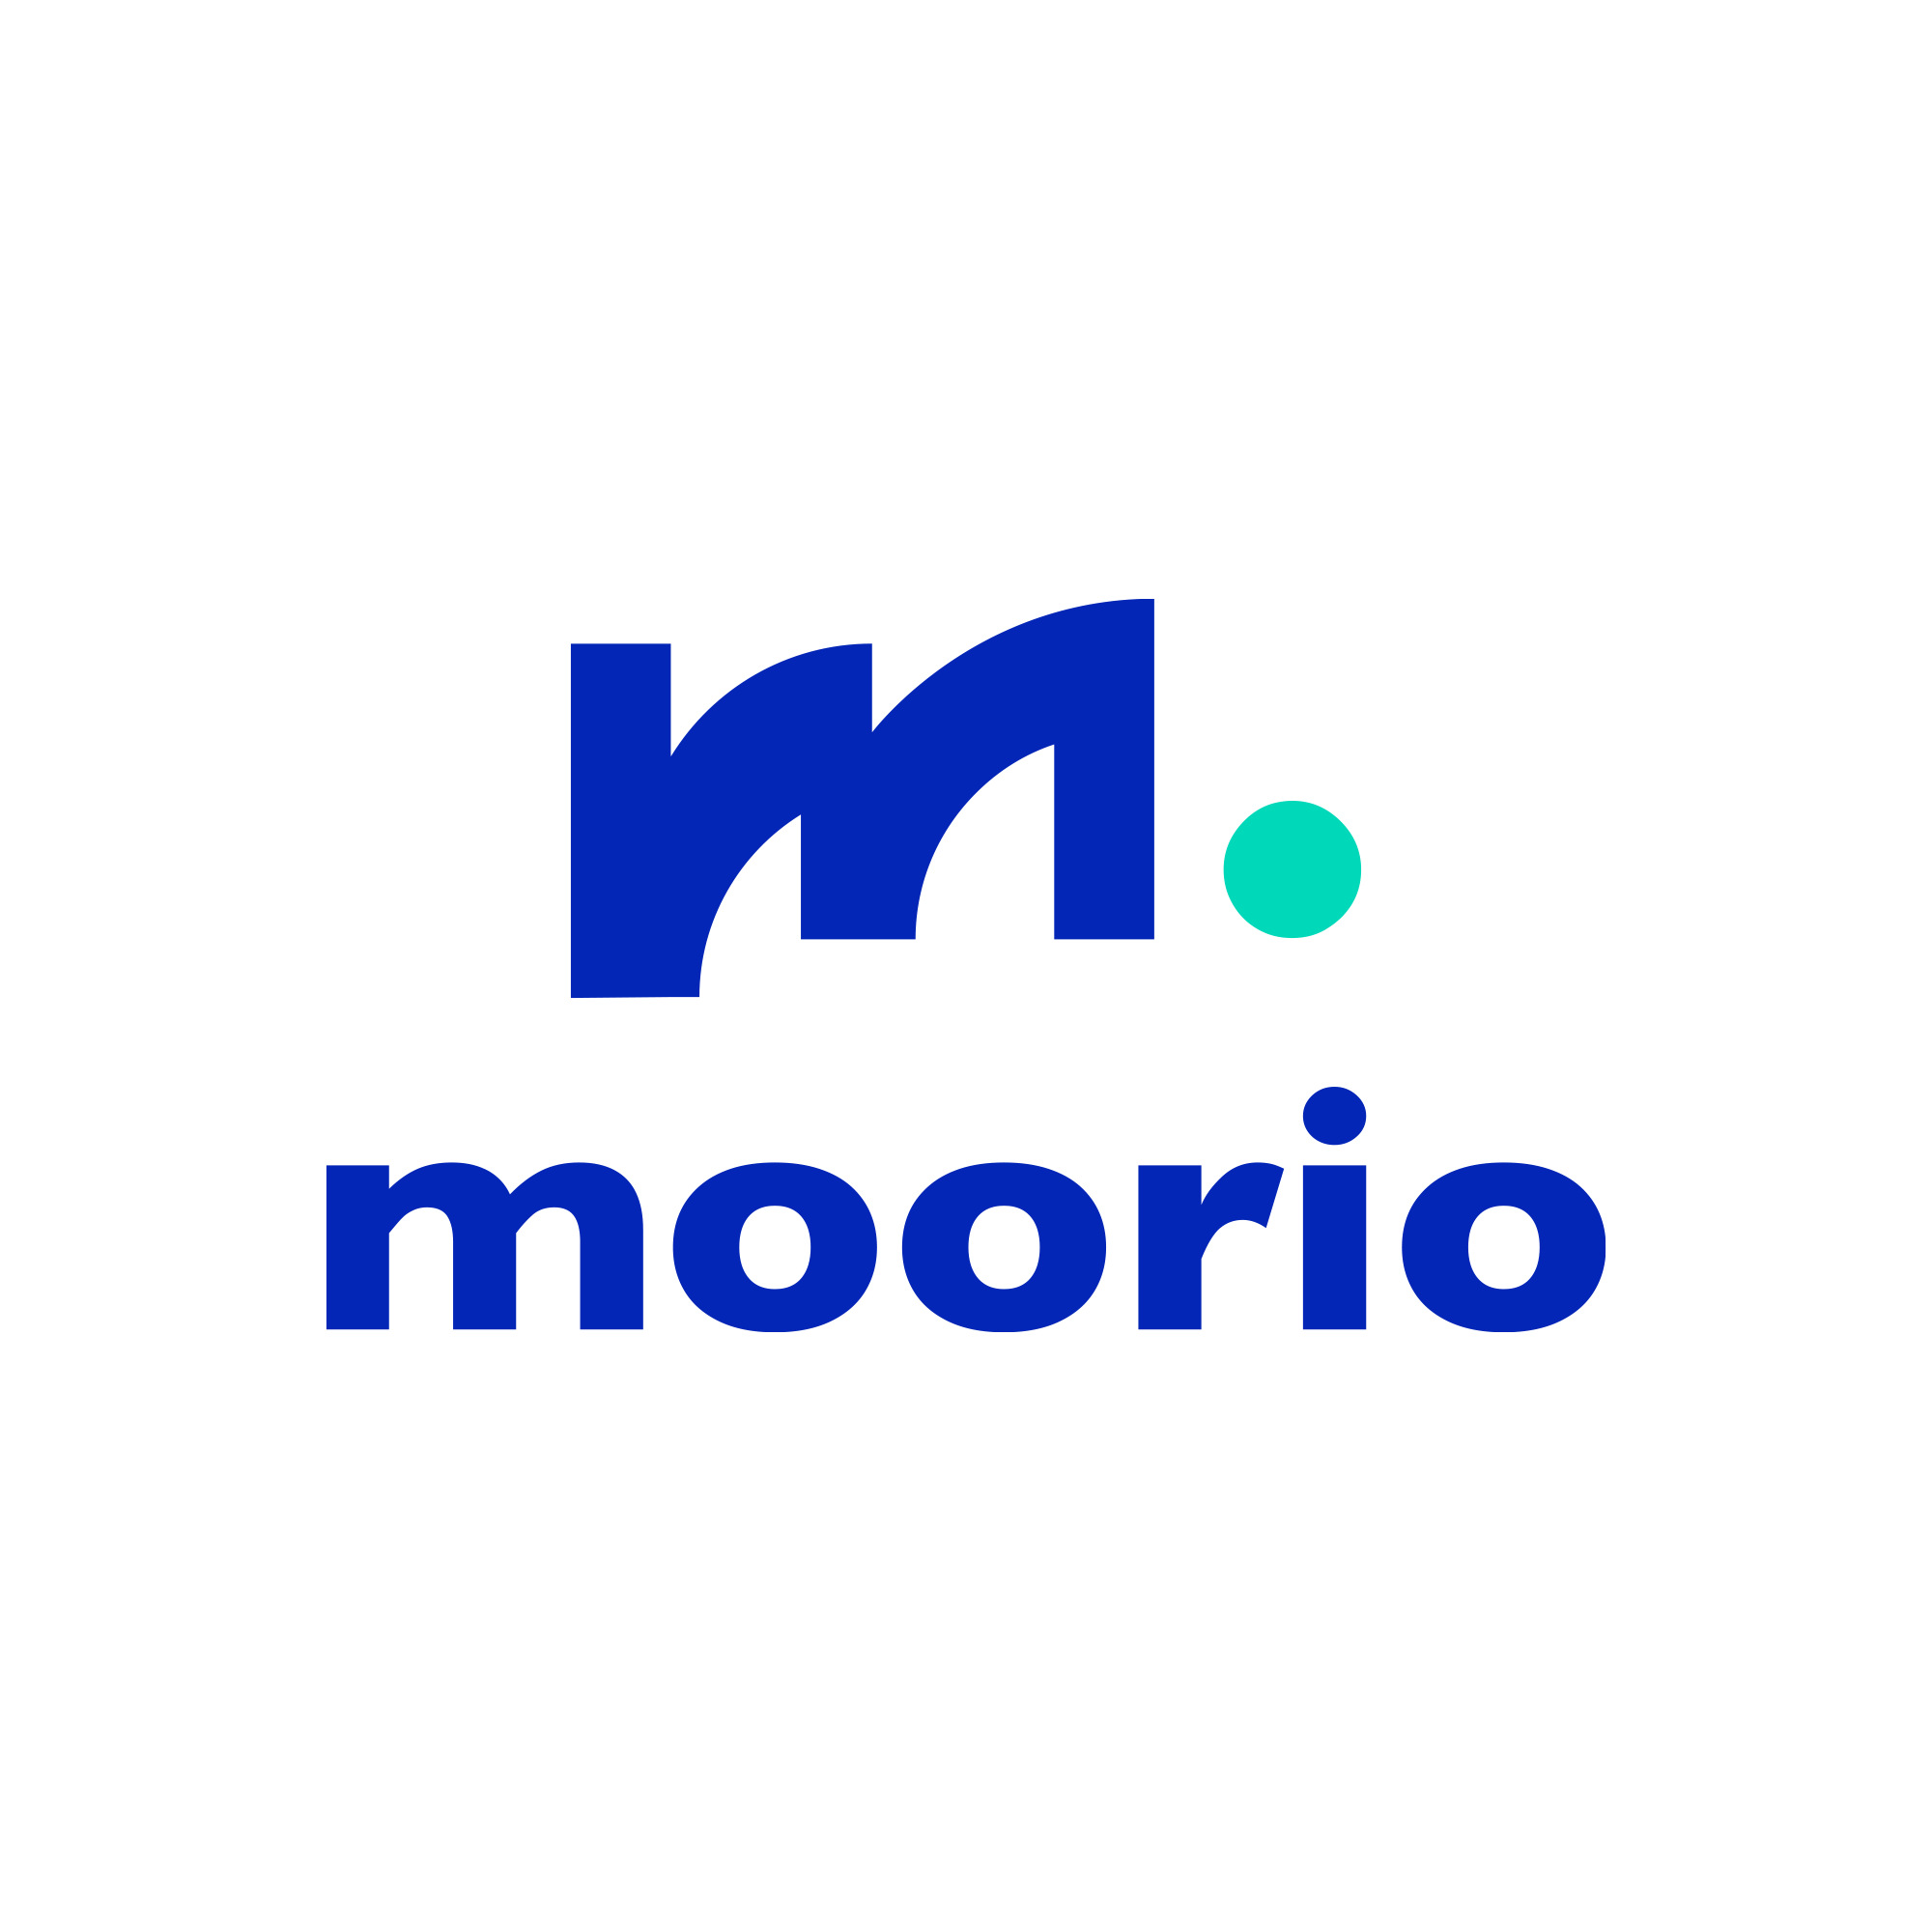 Moorio